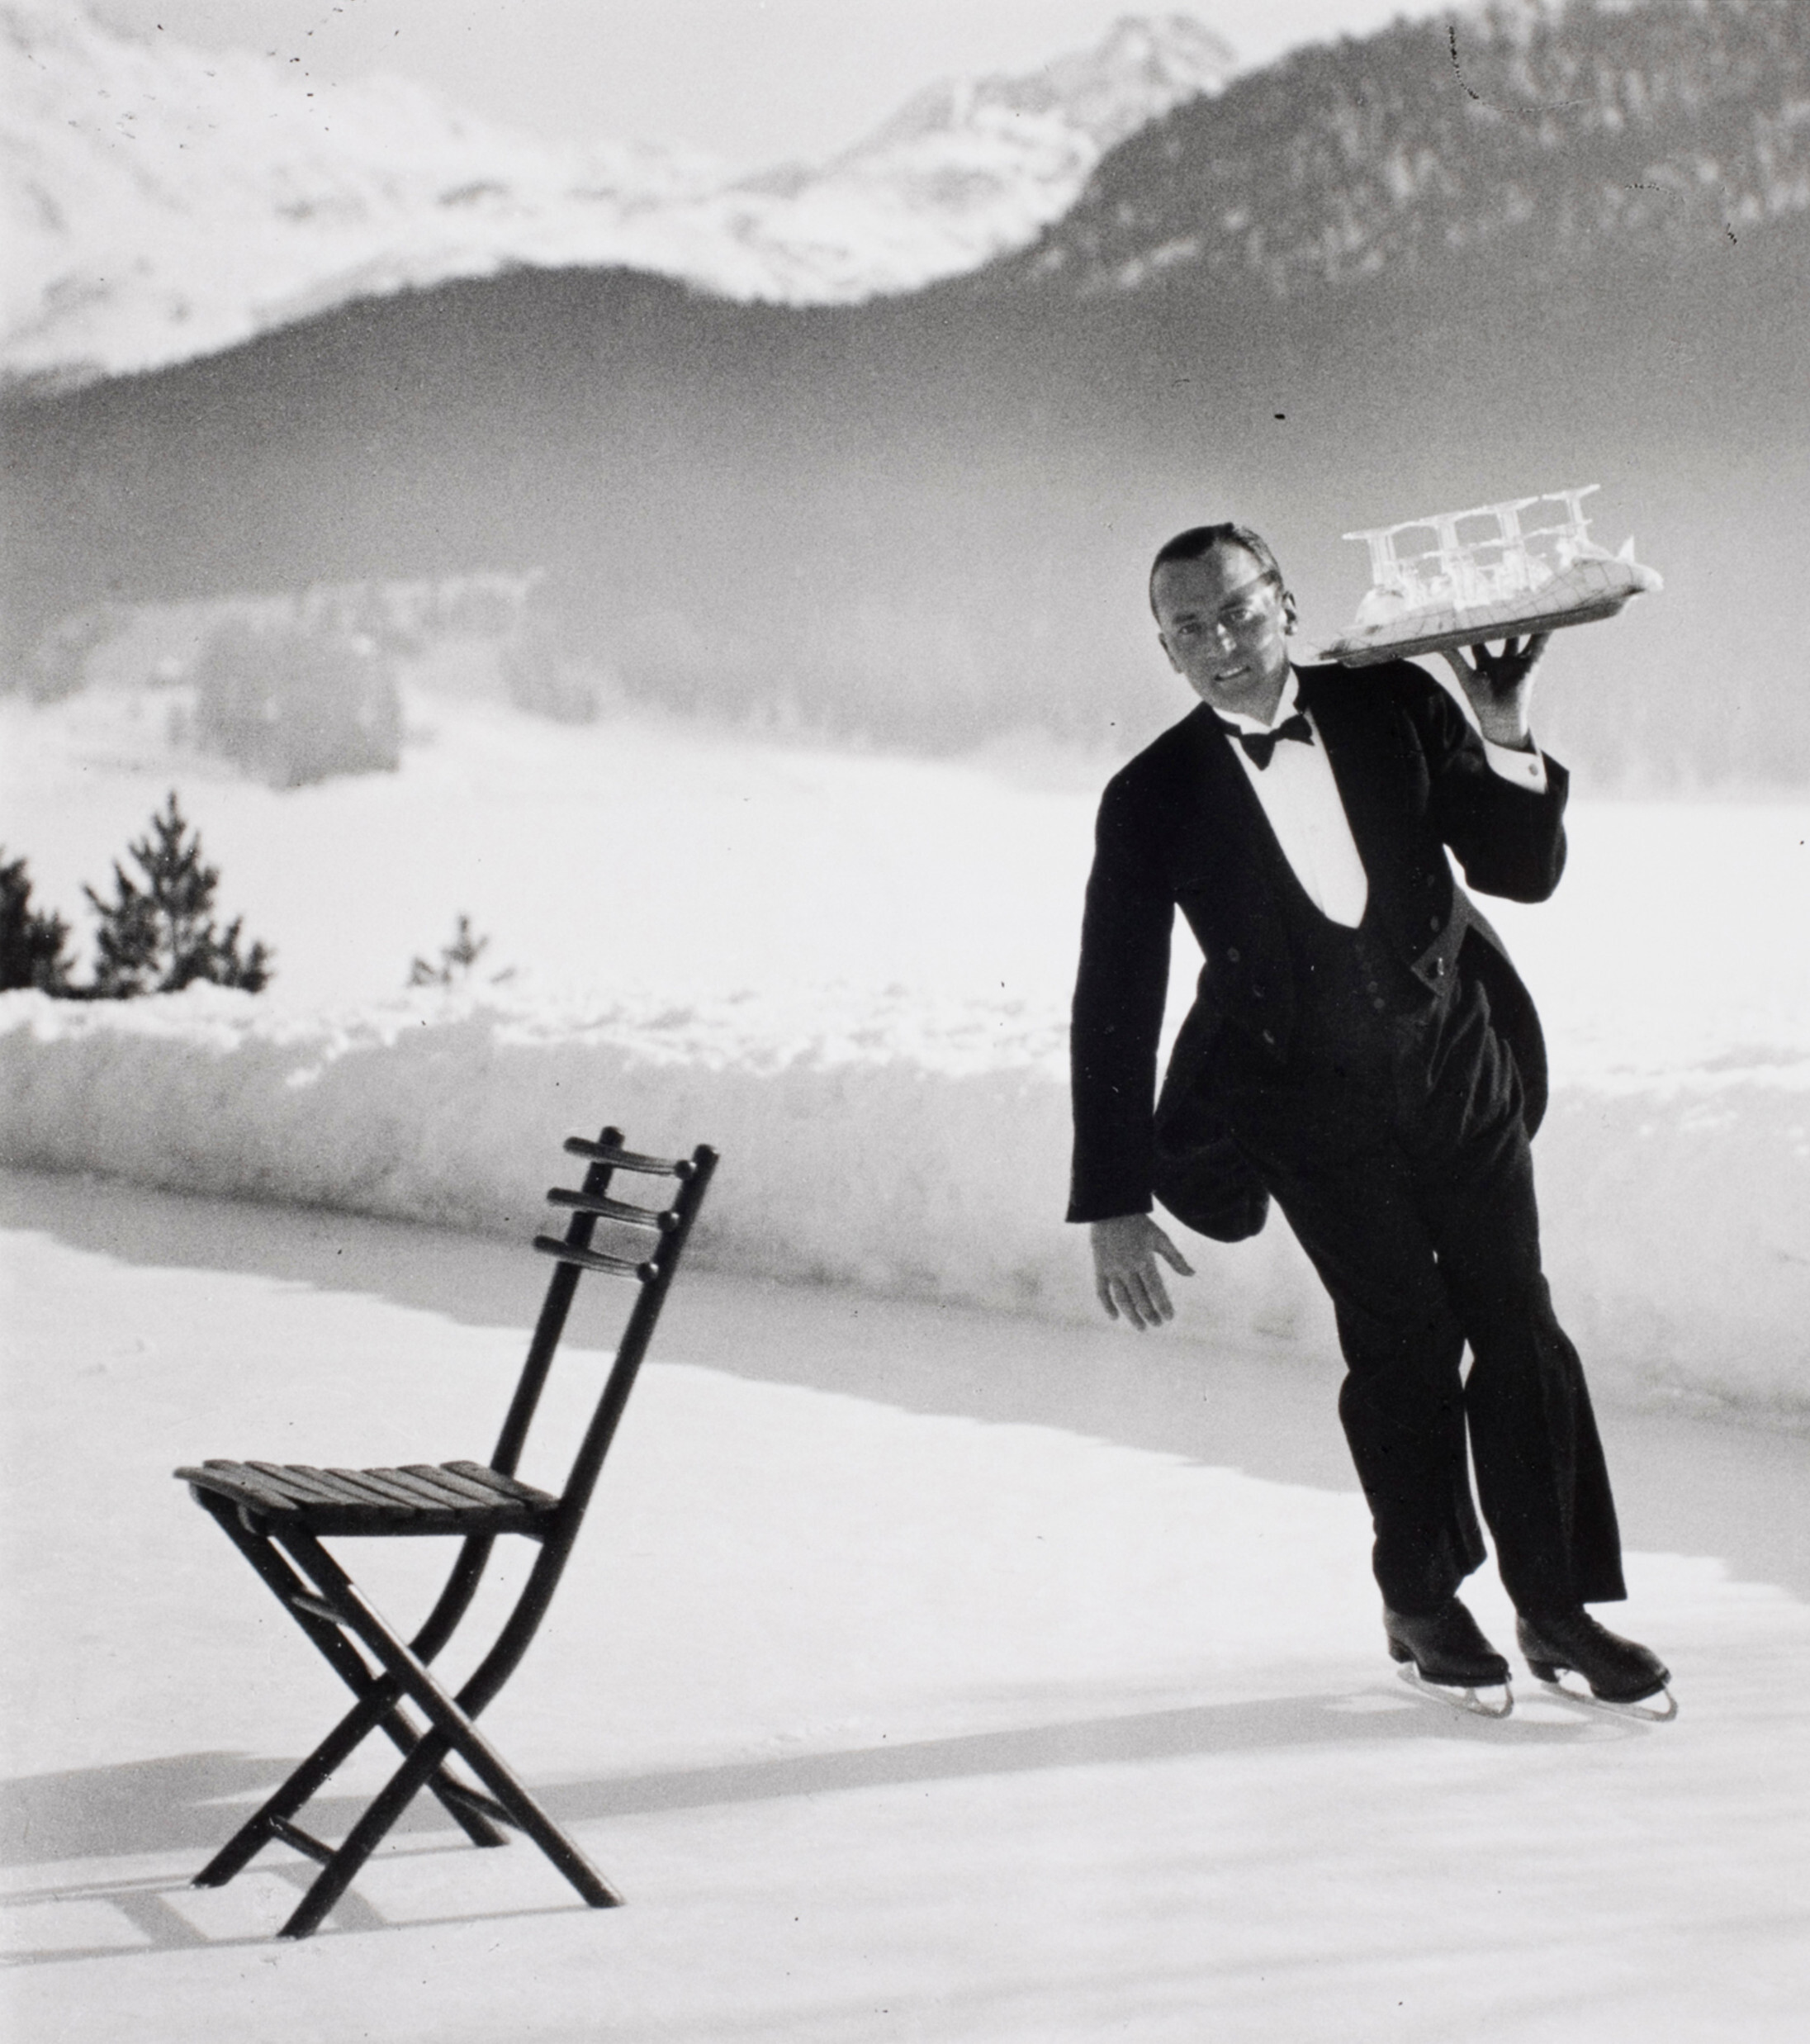 Метрдотель Рене Бреге из гранд-отеля St. Moritz подает коктейли на катке, 1932 год. Фотограф Альфред Эйзенштадт